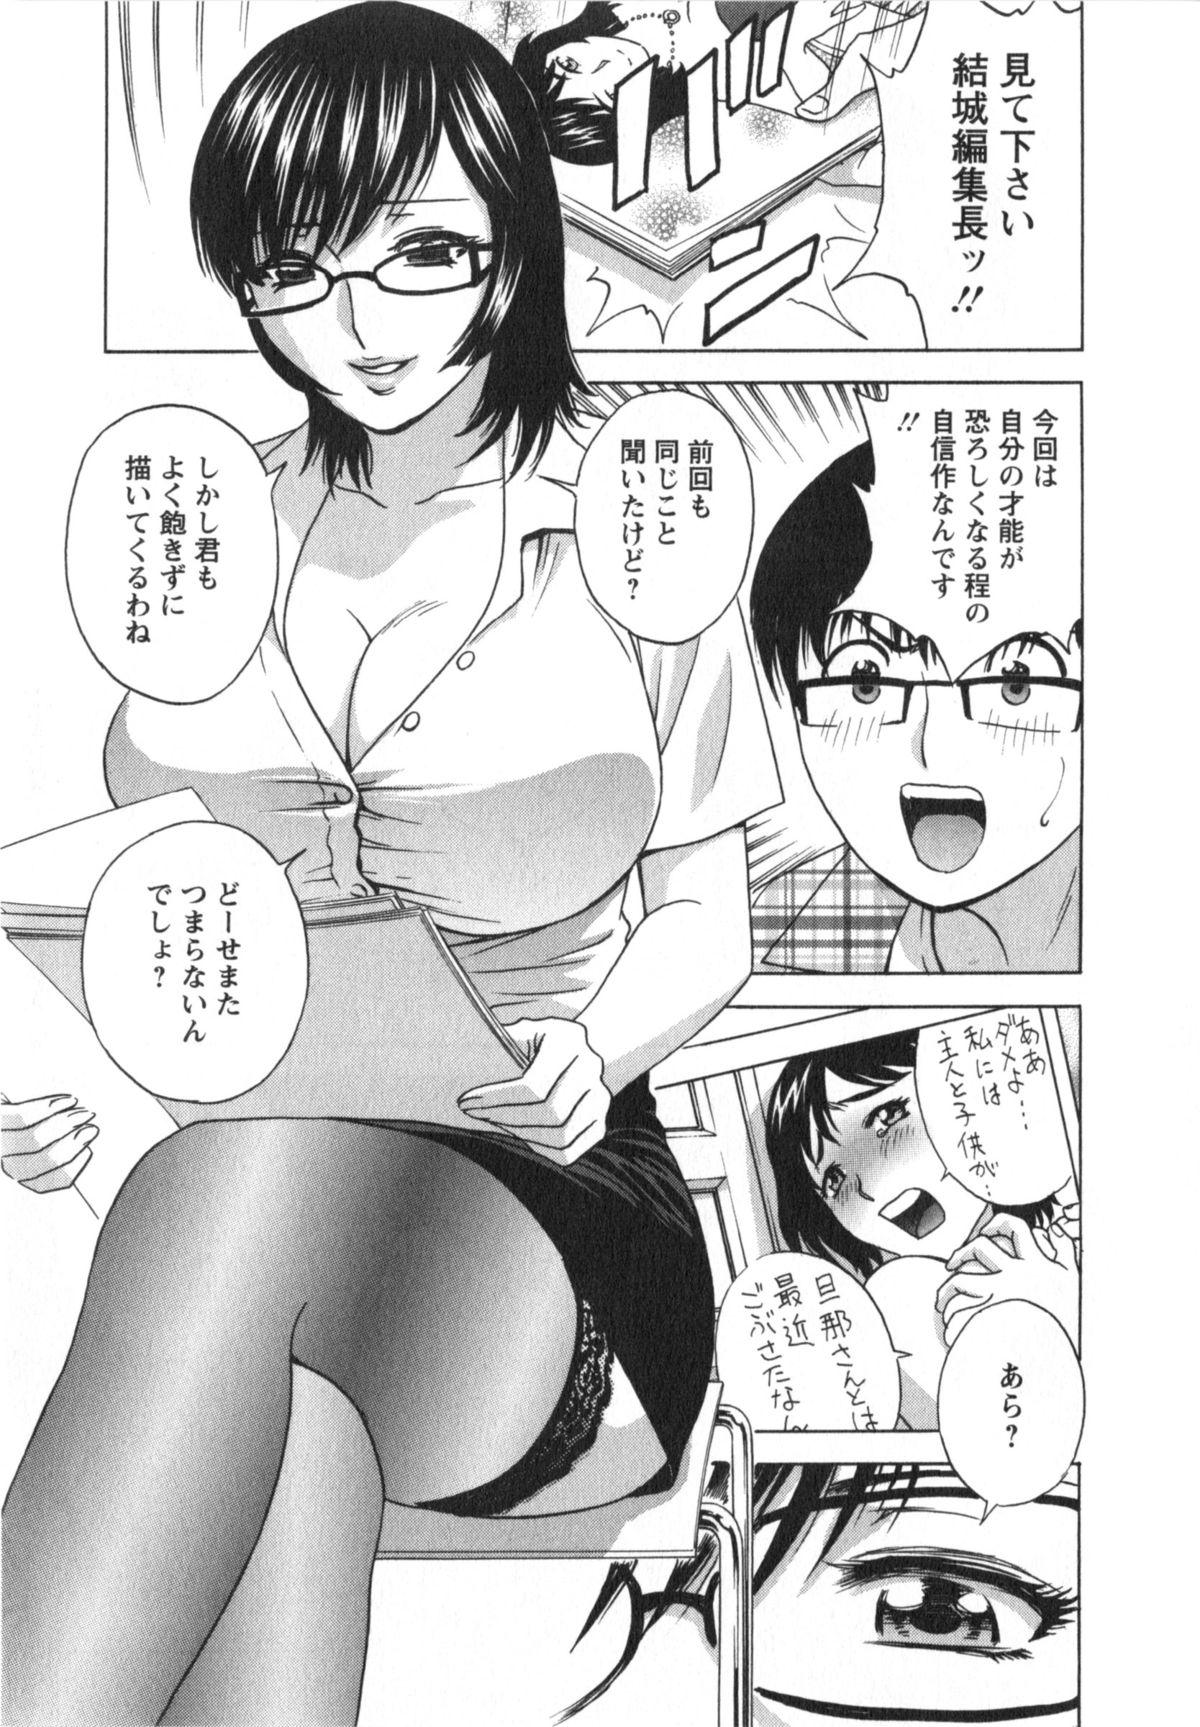 Manga no youna Hitozuma to no Hibi - Days with Married Women such as Comics. 103